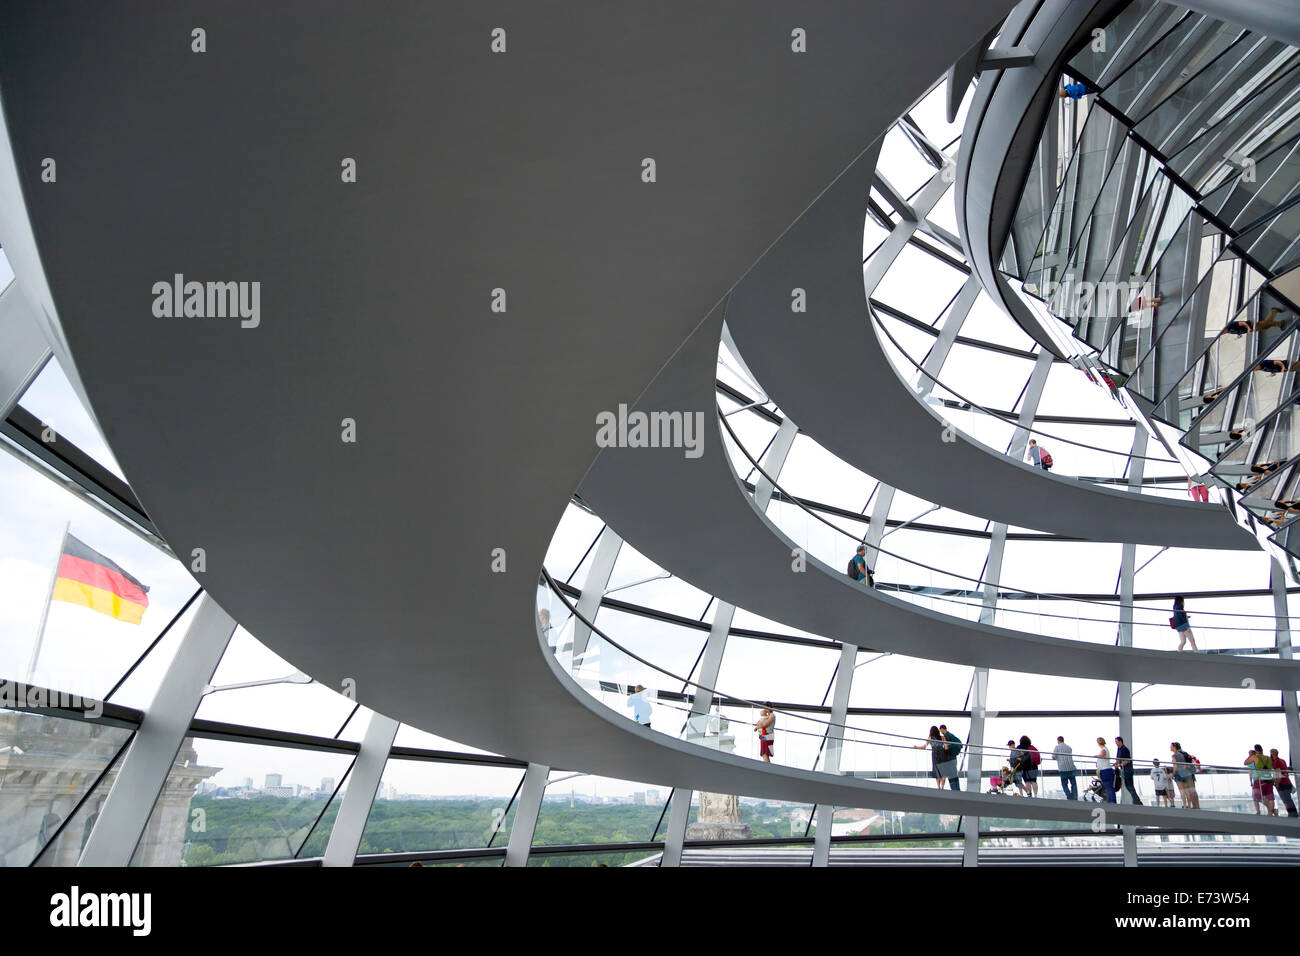 Germania, Berlino Mitte, interno della cupola di vetro con rampe e specchi sulla sommità del Reichstag progettata dall'architetto Norman Foster. Foto Stock